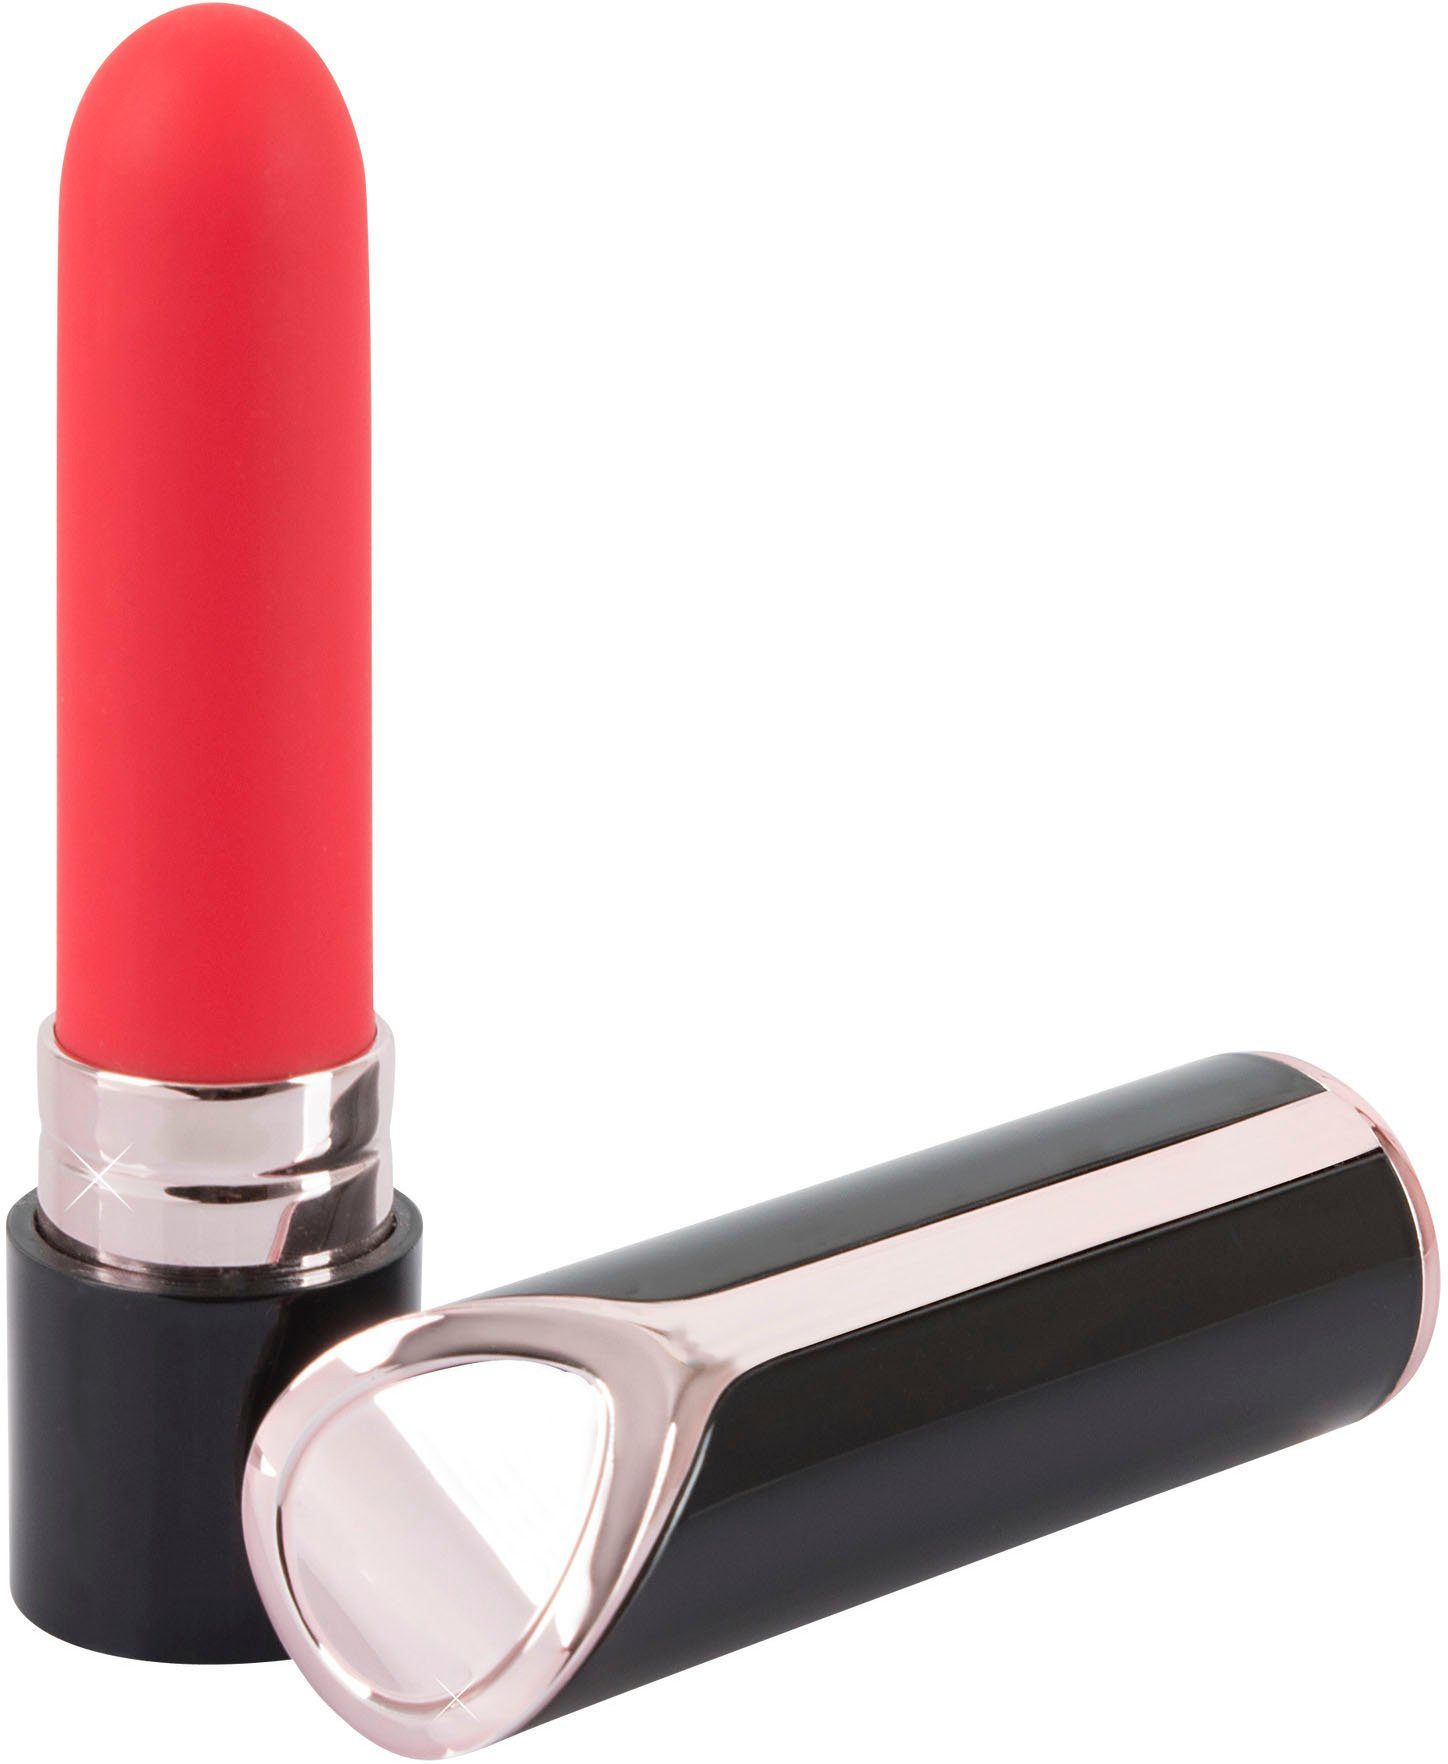 You2Toys Mini-Vibrator Lipstick Vibrator